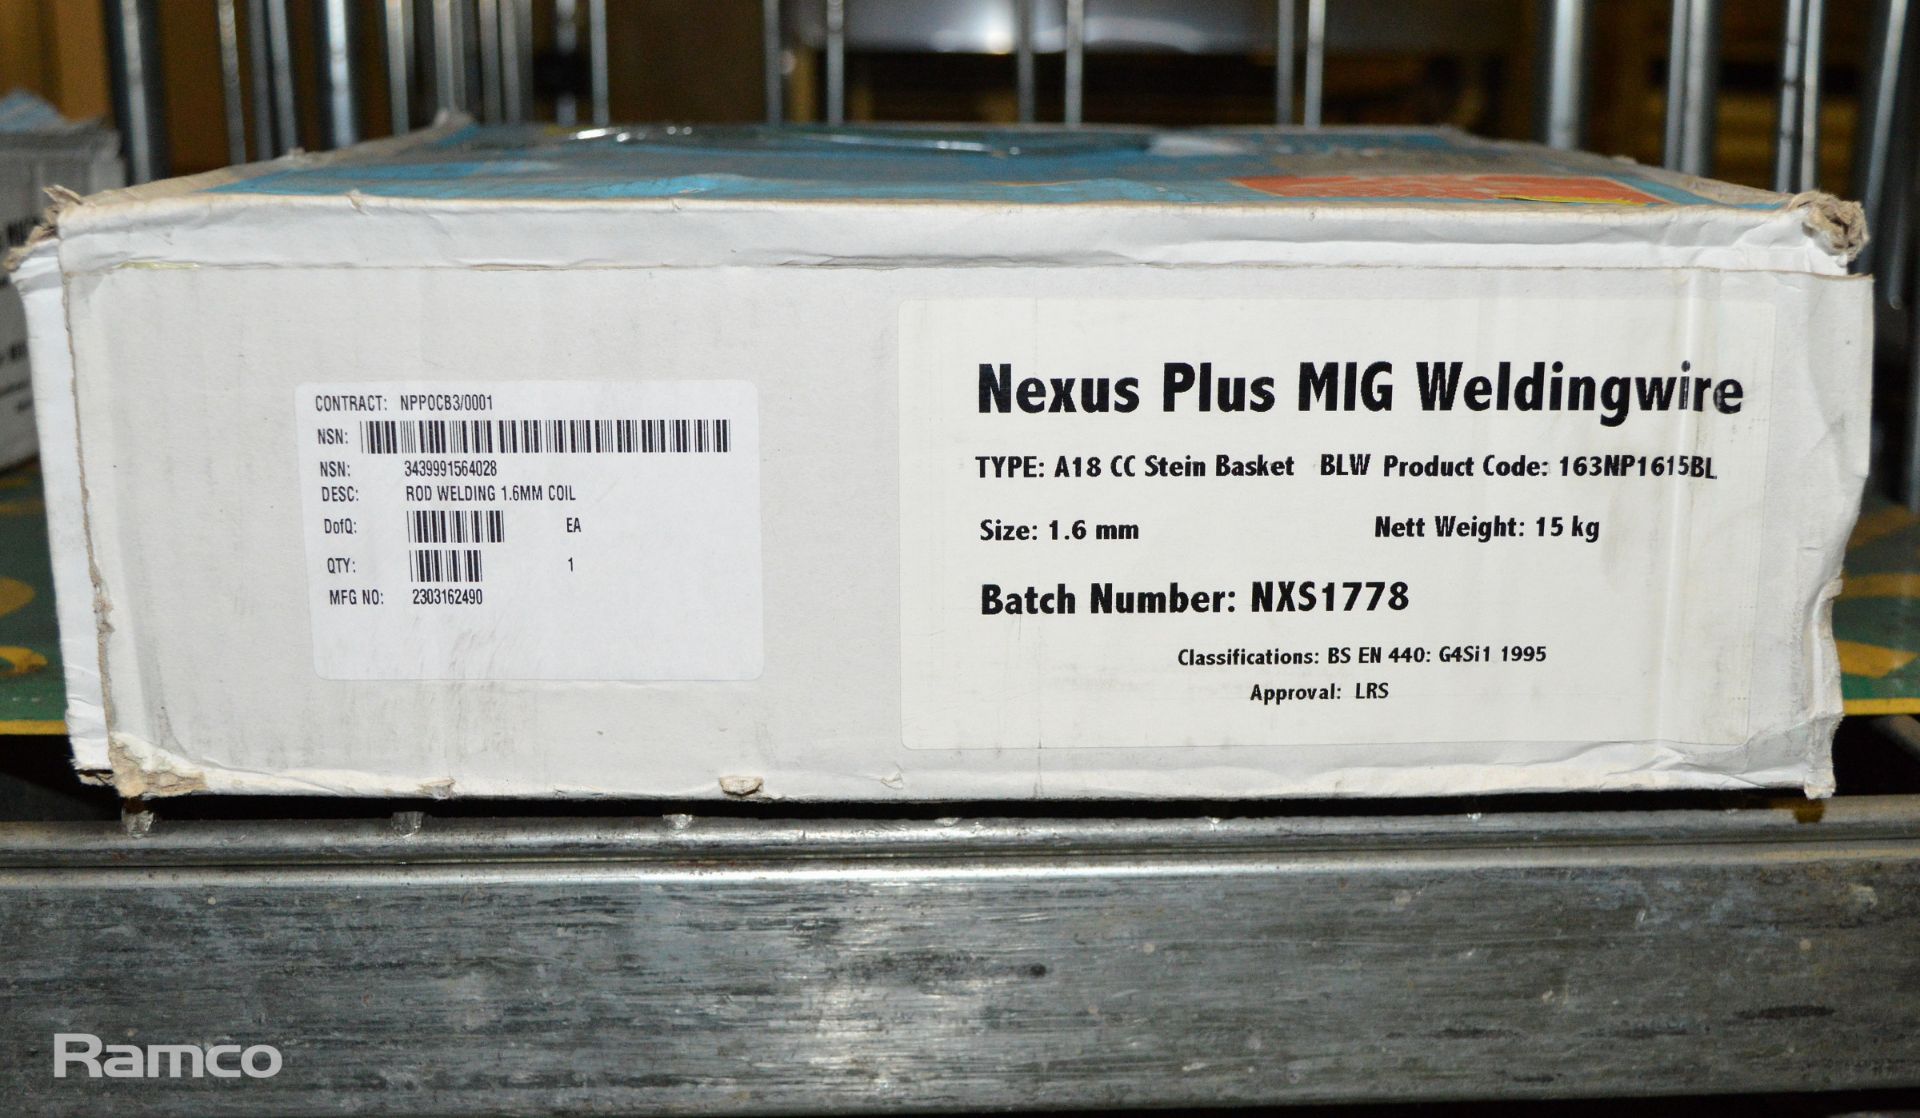 Nexus Plus mig welding wire 1.6mm - Image 2 of 2